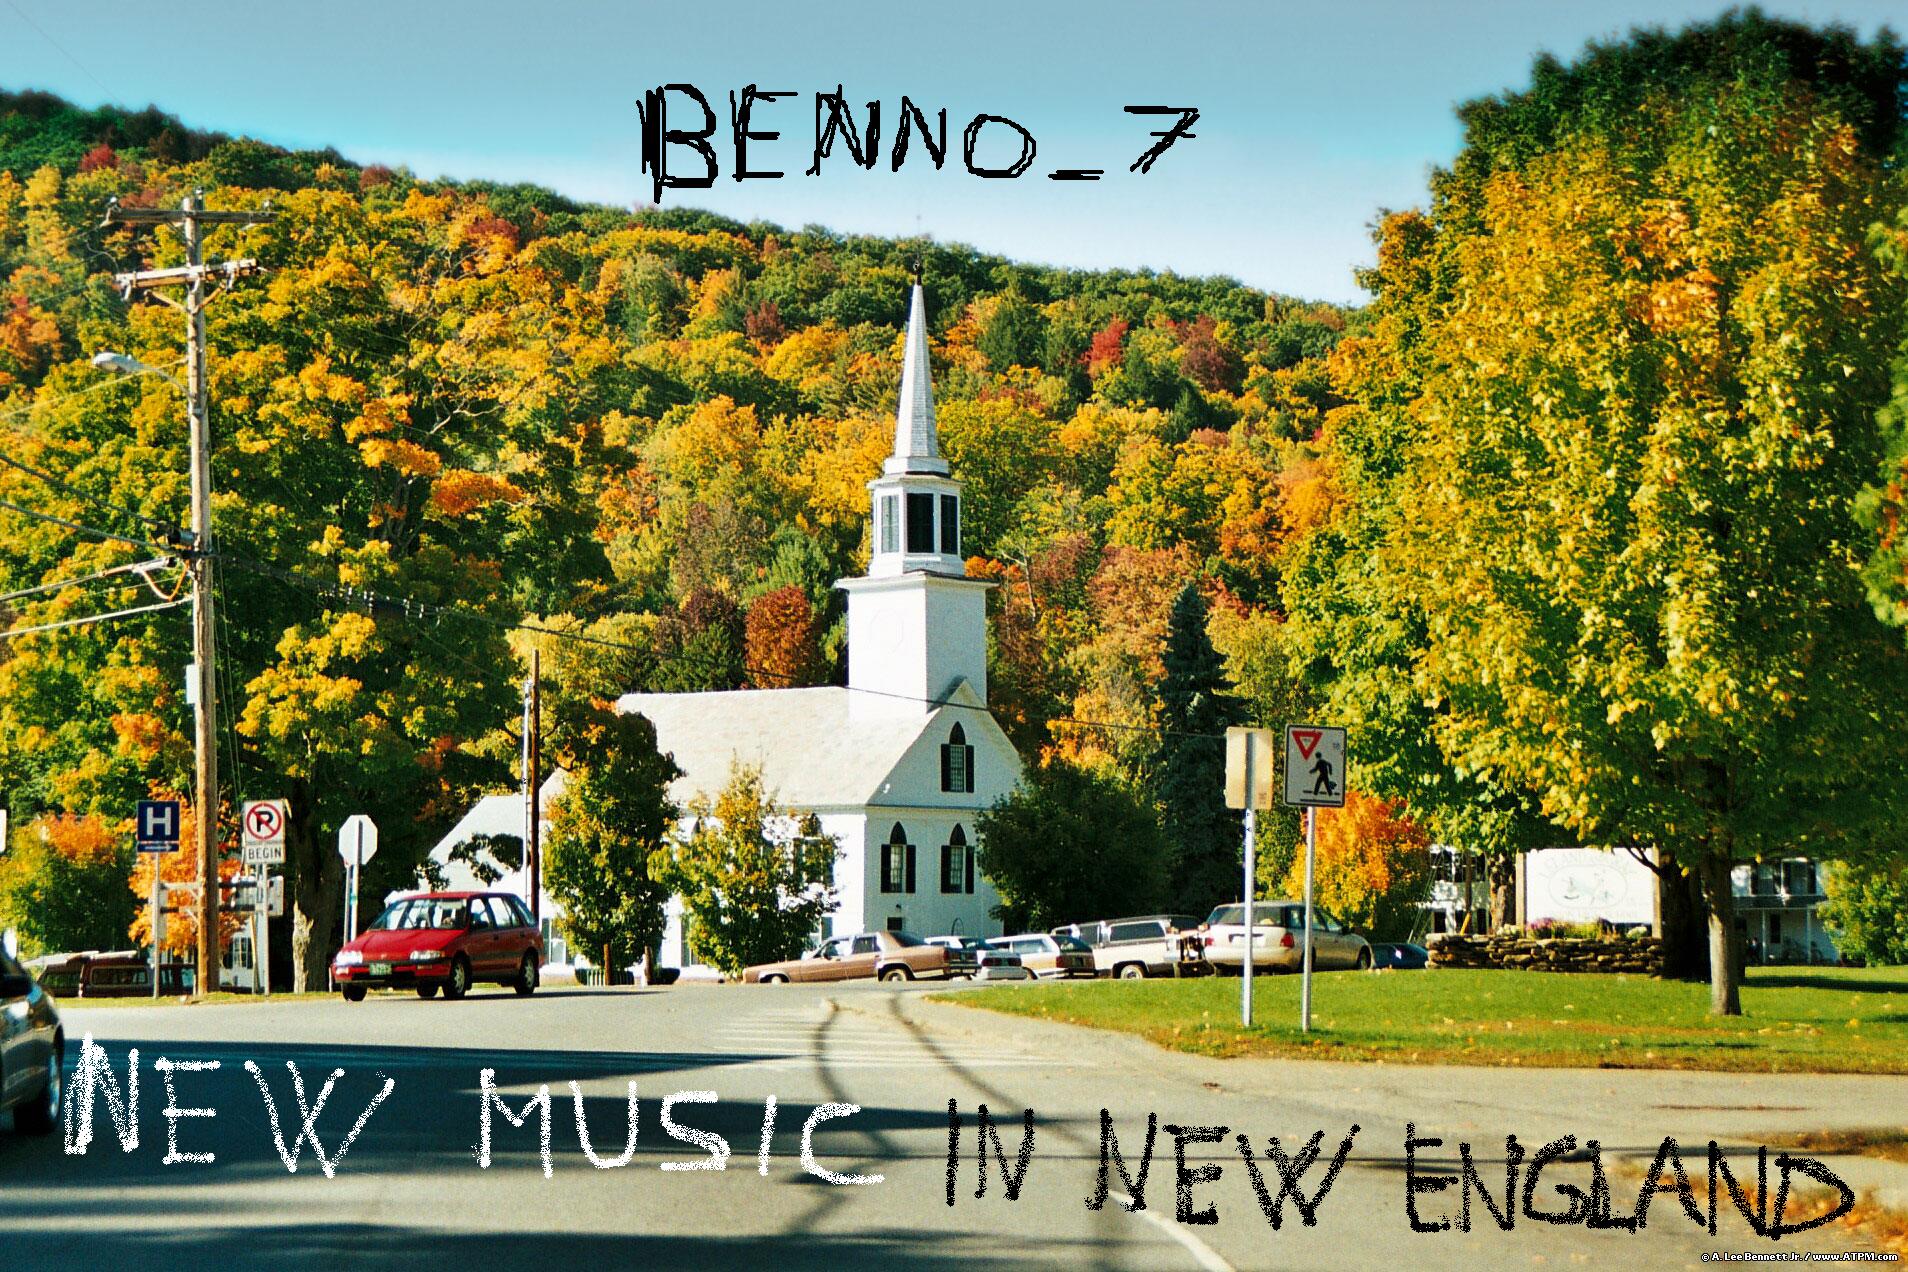 Benno – preterizioni sonore #7 – New Music in New England